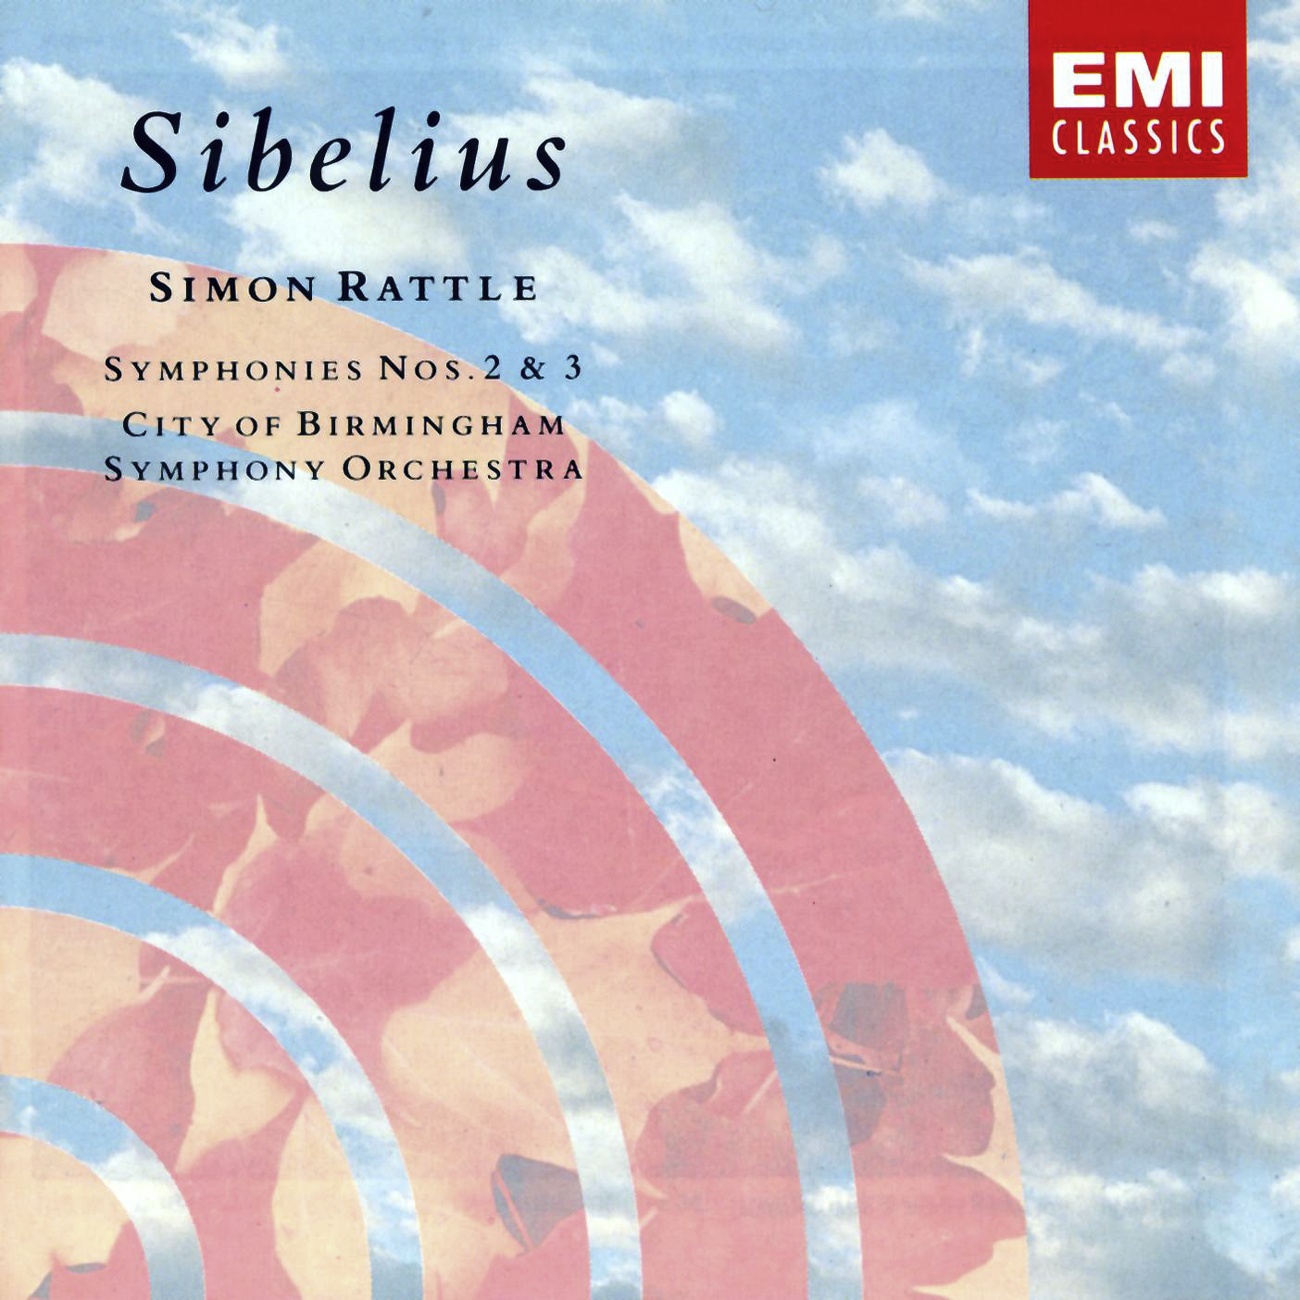 Sibelius: Symphony No. 2 in D, Op. 43: II. Tempo andante, ma rubato